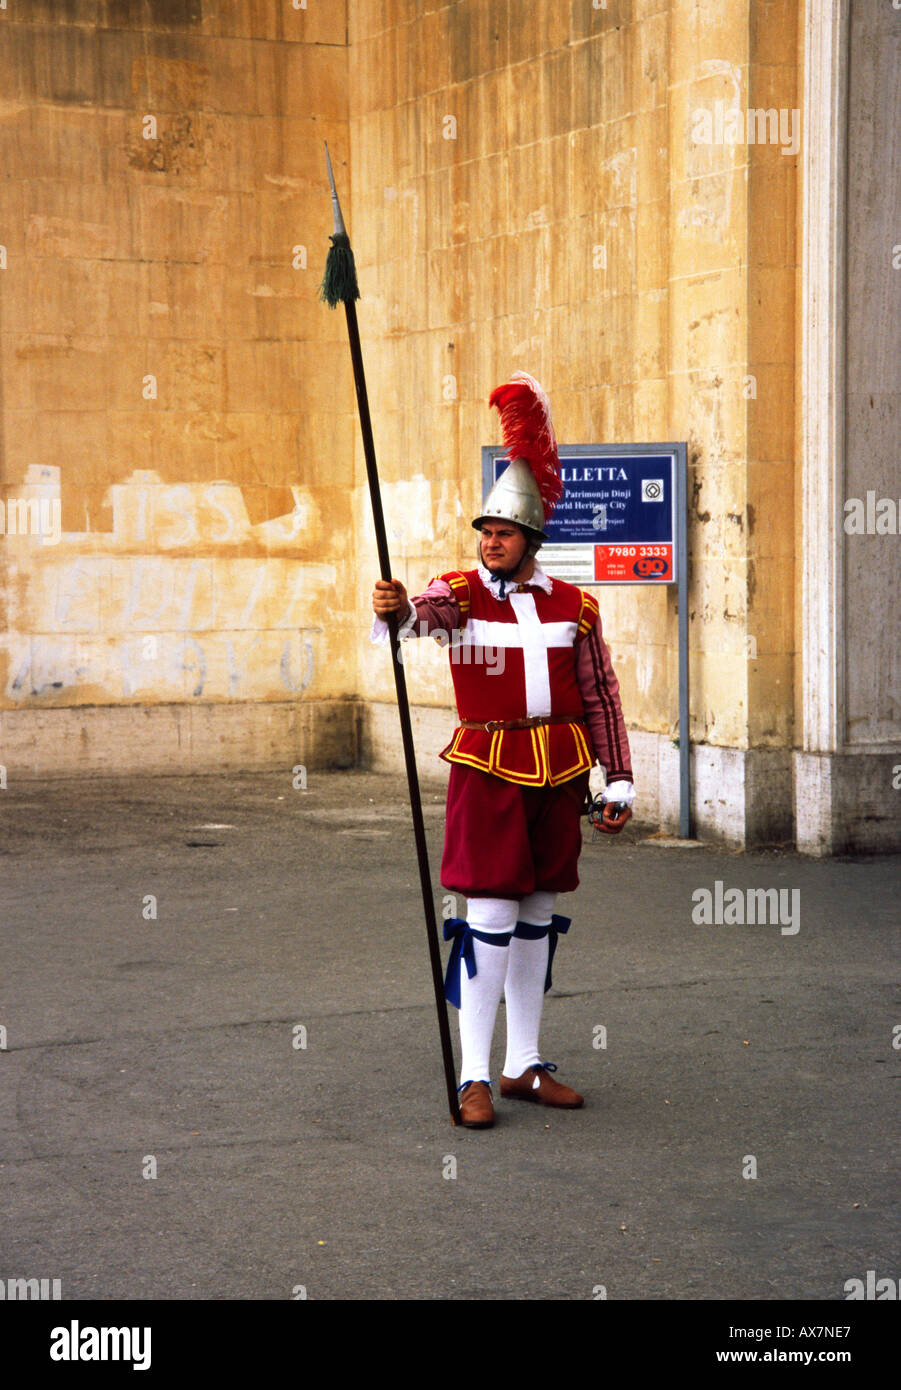 Malta, Valletta, Knight in uniform Stock Photo - Alamy